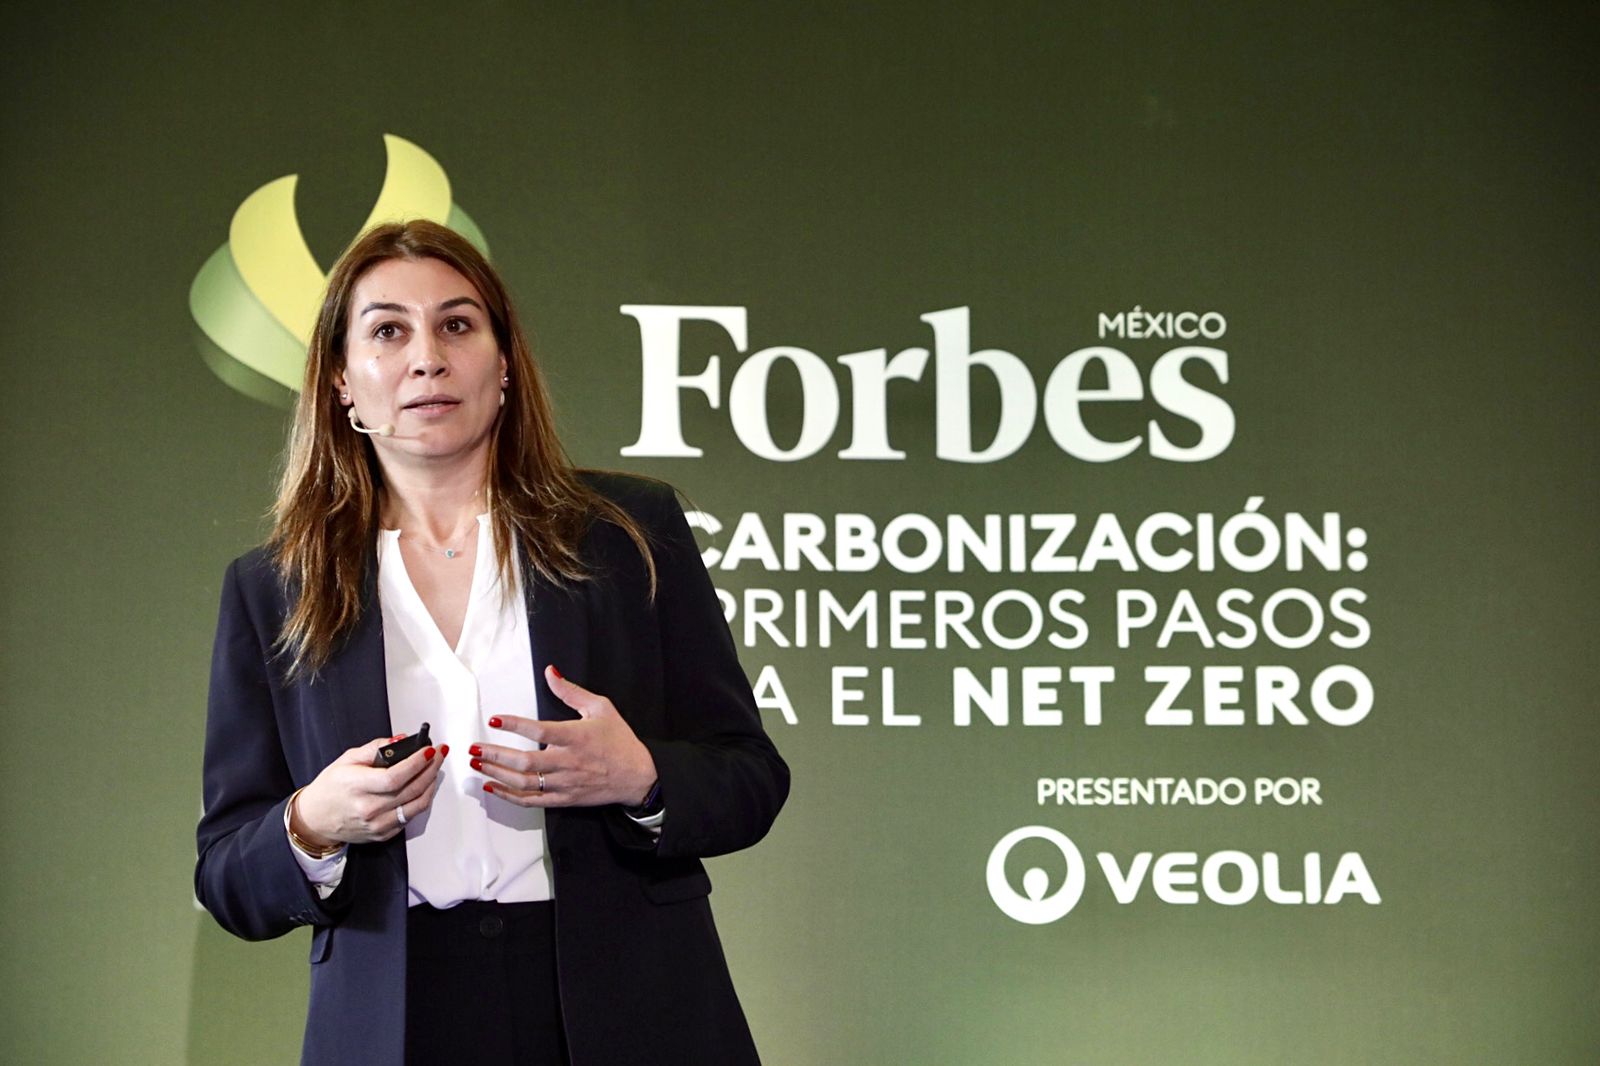 Foro Forbes: ‘Empresas deben equilibrar negocio con descarbonización’, dice Veolia